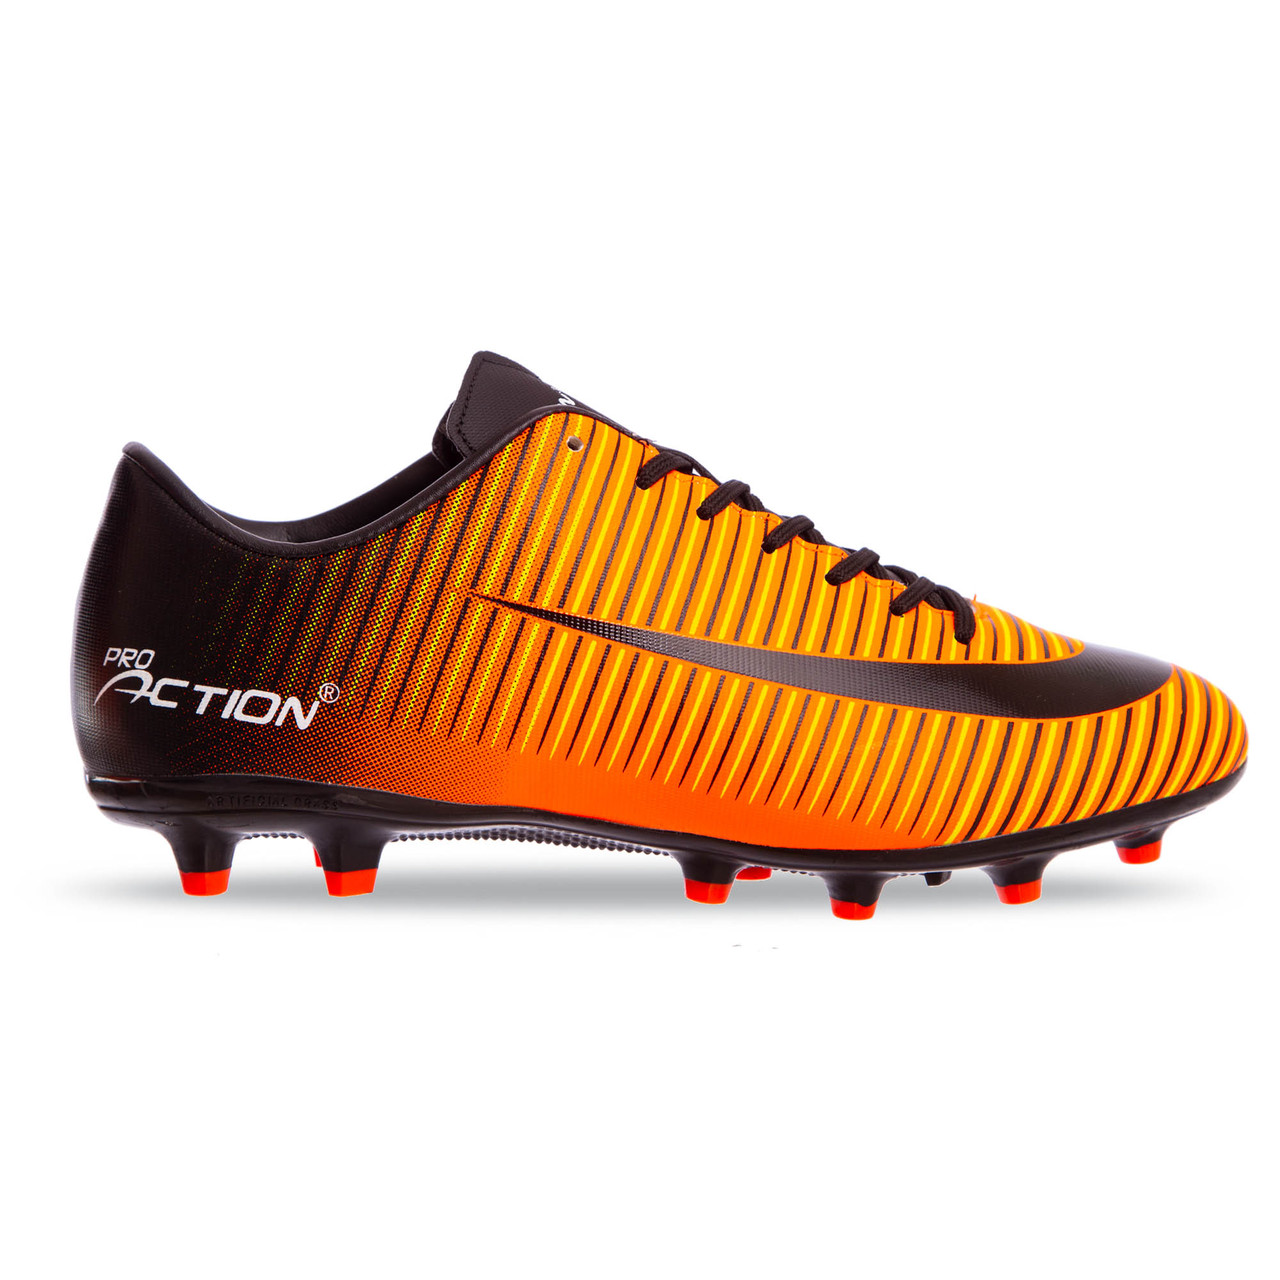 

Бутсы футбольная обувь Pro Action VL17778-TPU-40-45-BKO BLACK/ORANGE размер 40-45 (верх-TPU, подошва-RB, черный-оранжевый)